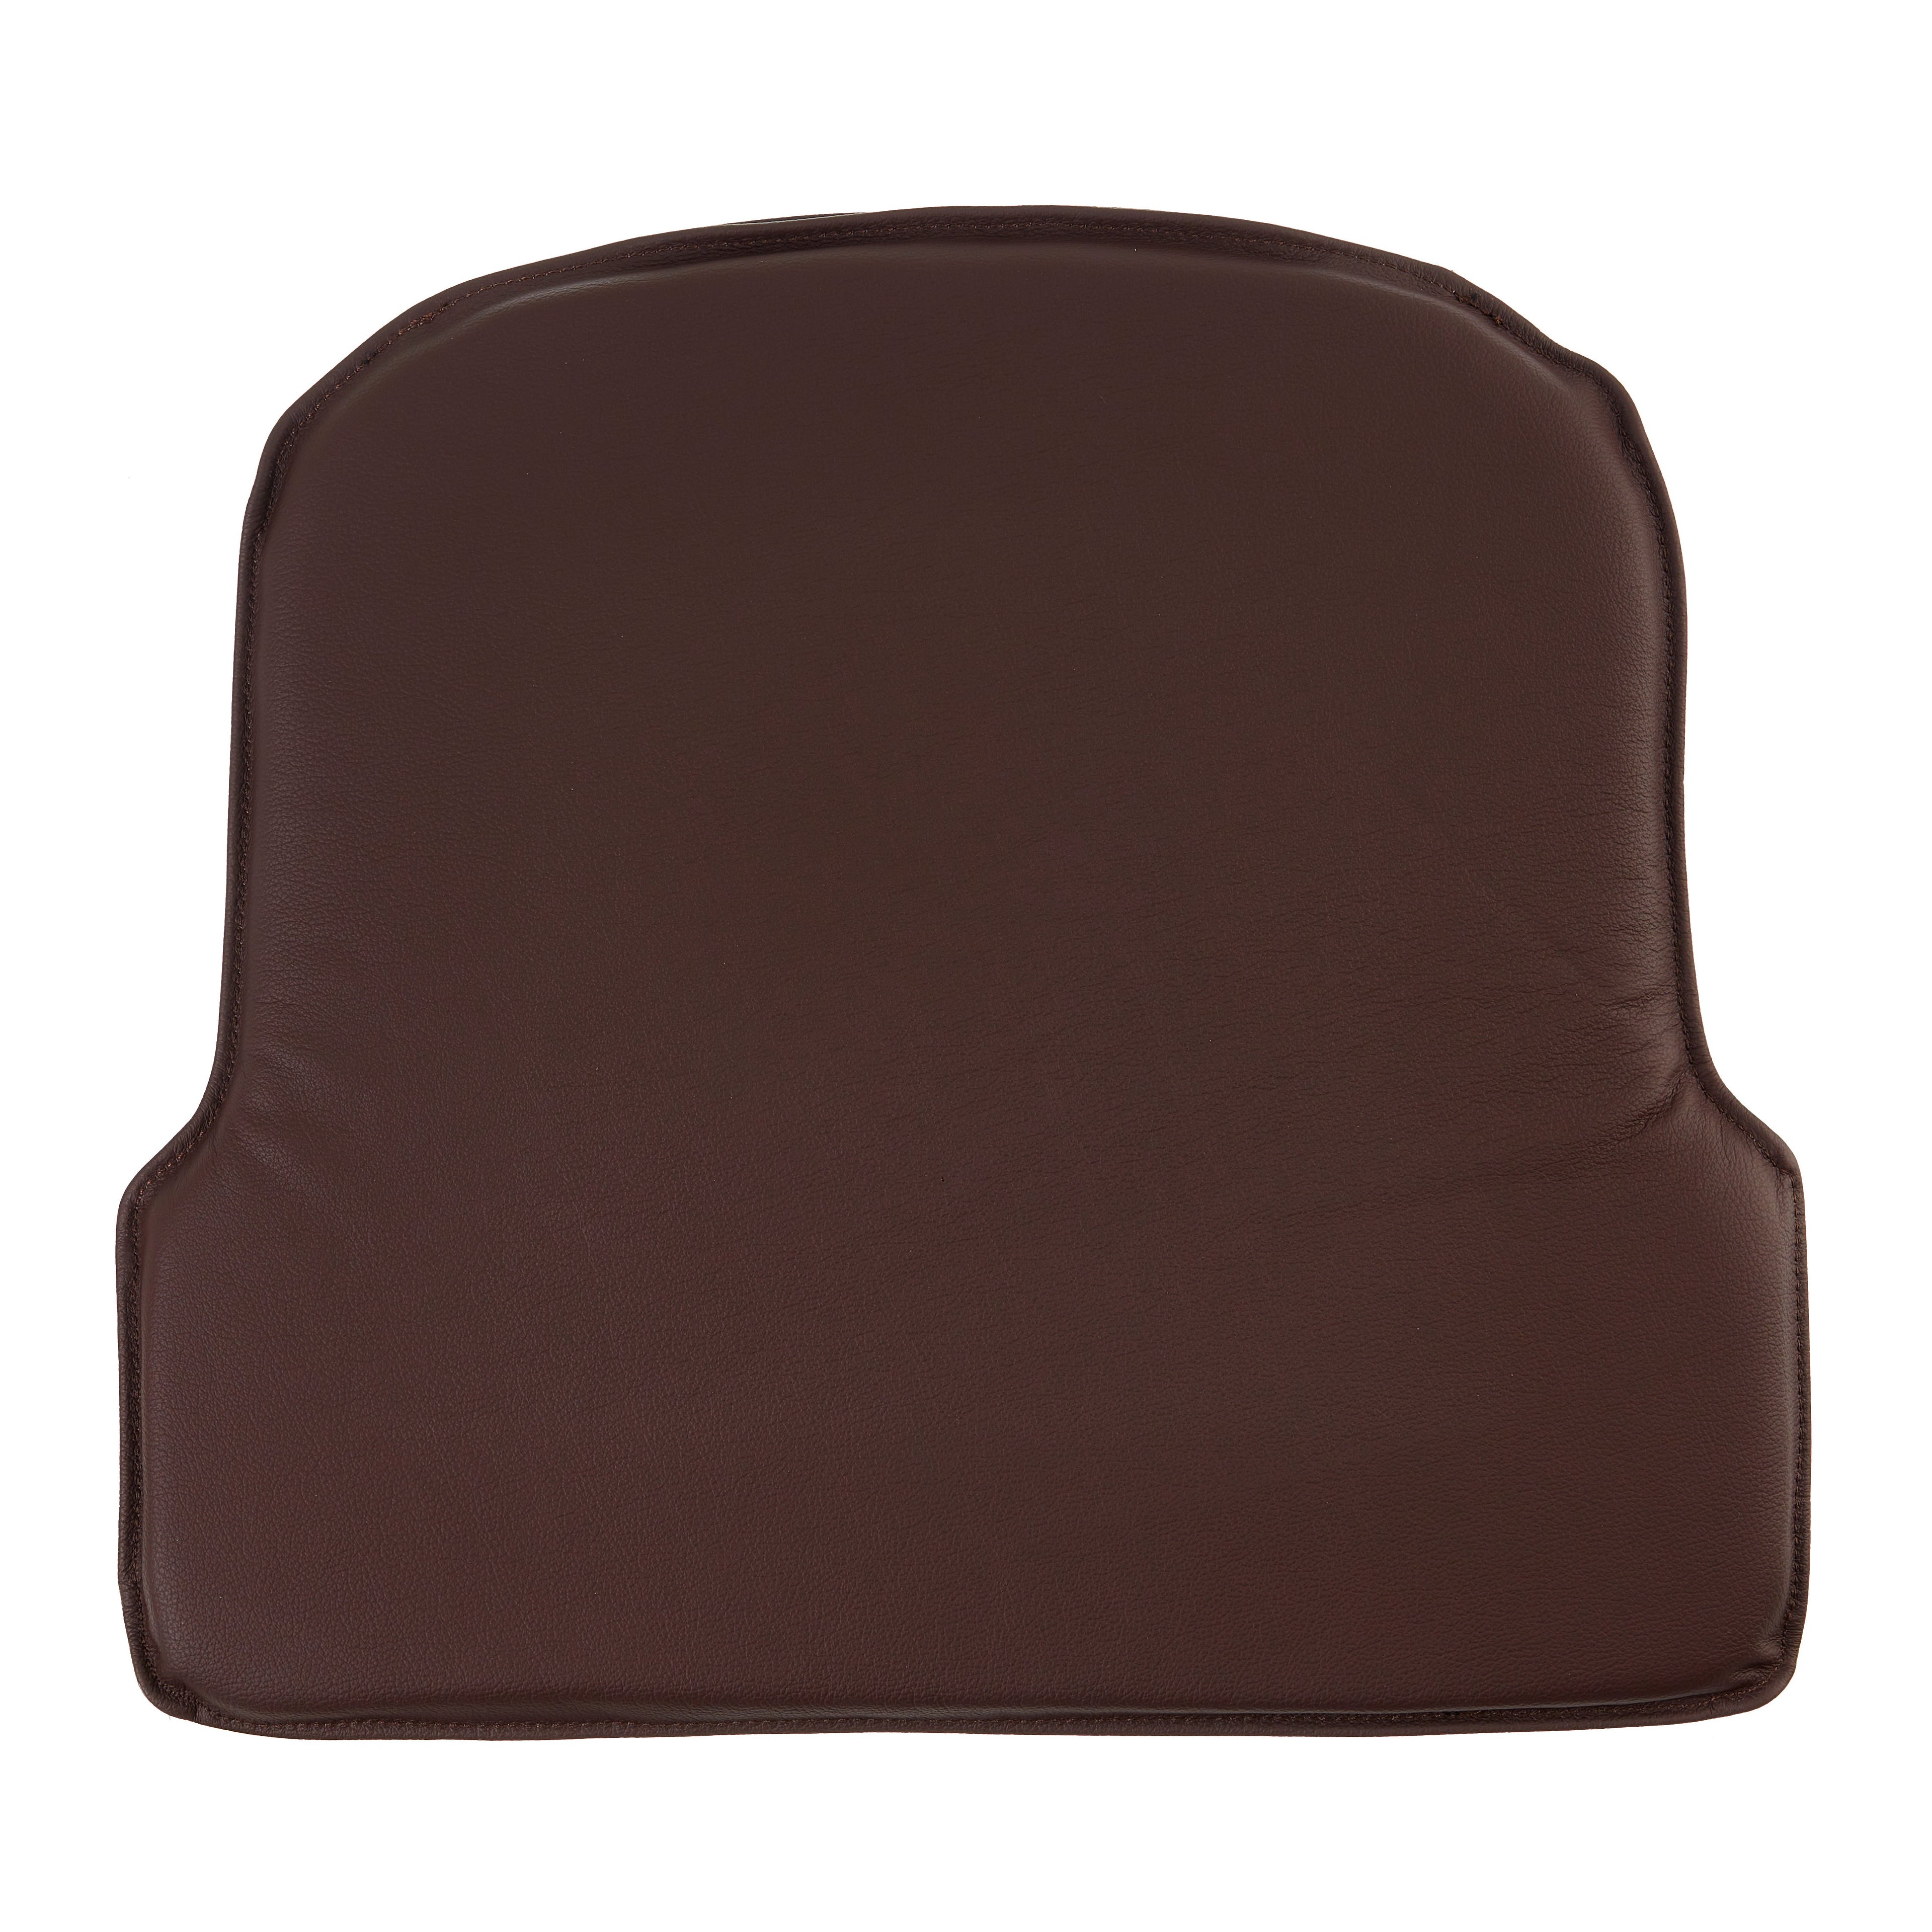 Almofada de couro marrom escuro de luxo para a cadeira de balanço de farstup modelo 183